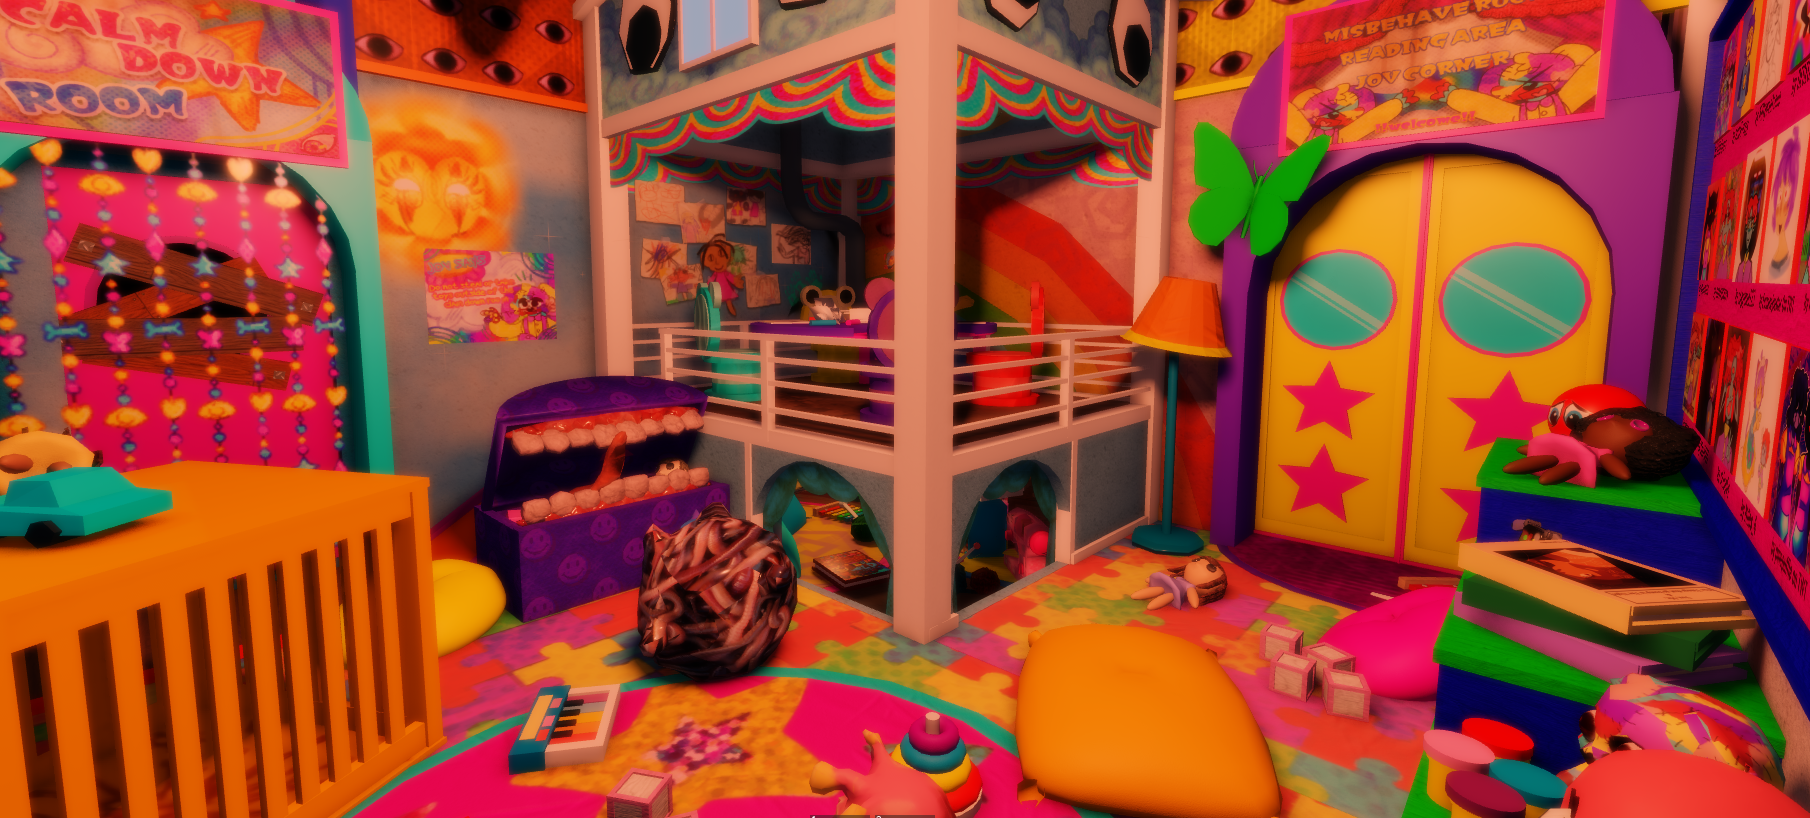 Here are my games; 1: Jovial playground 2: Dream world. #kidcore